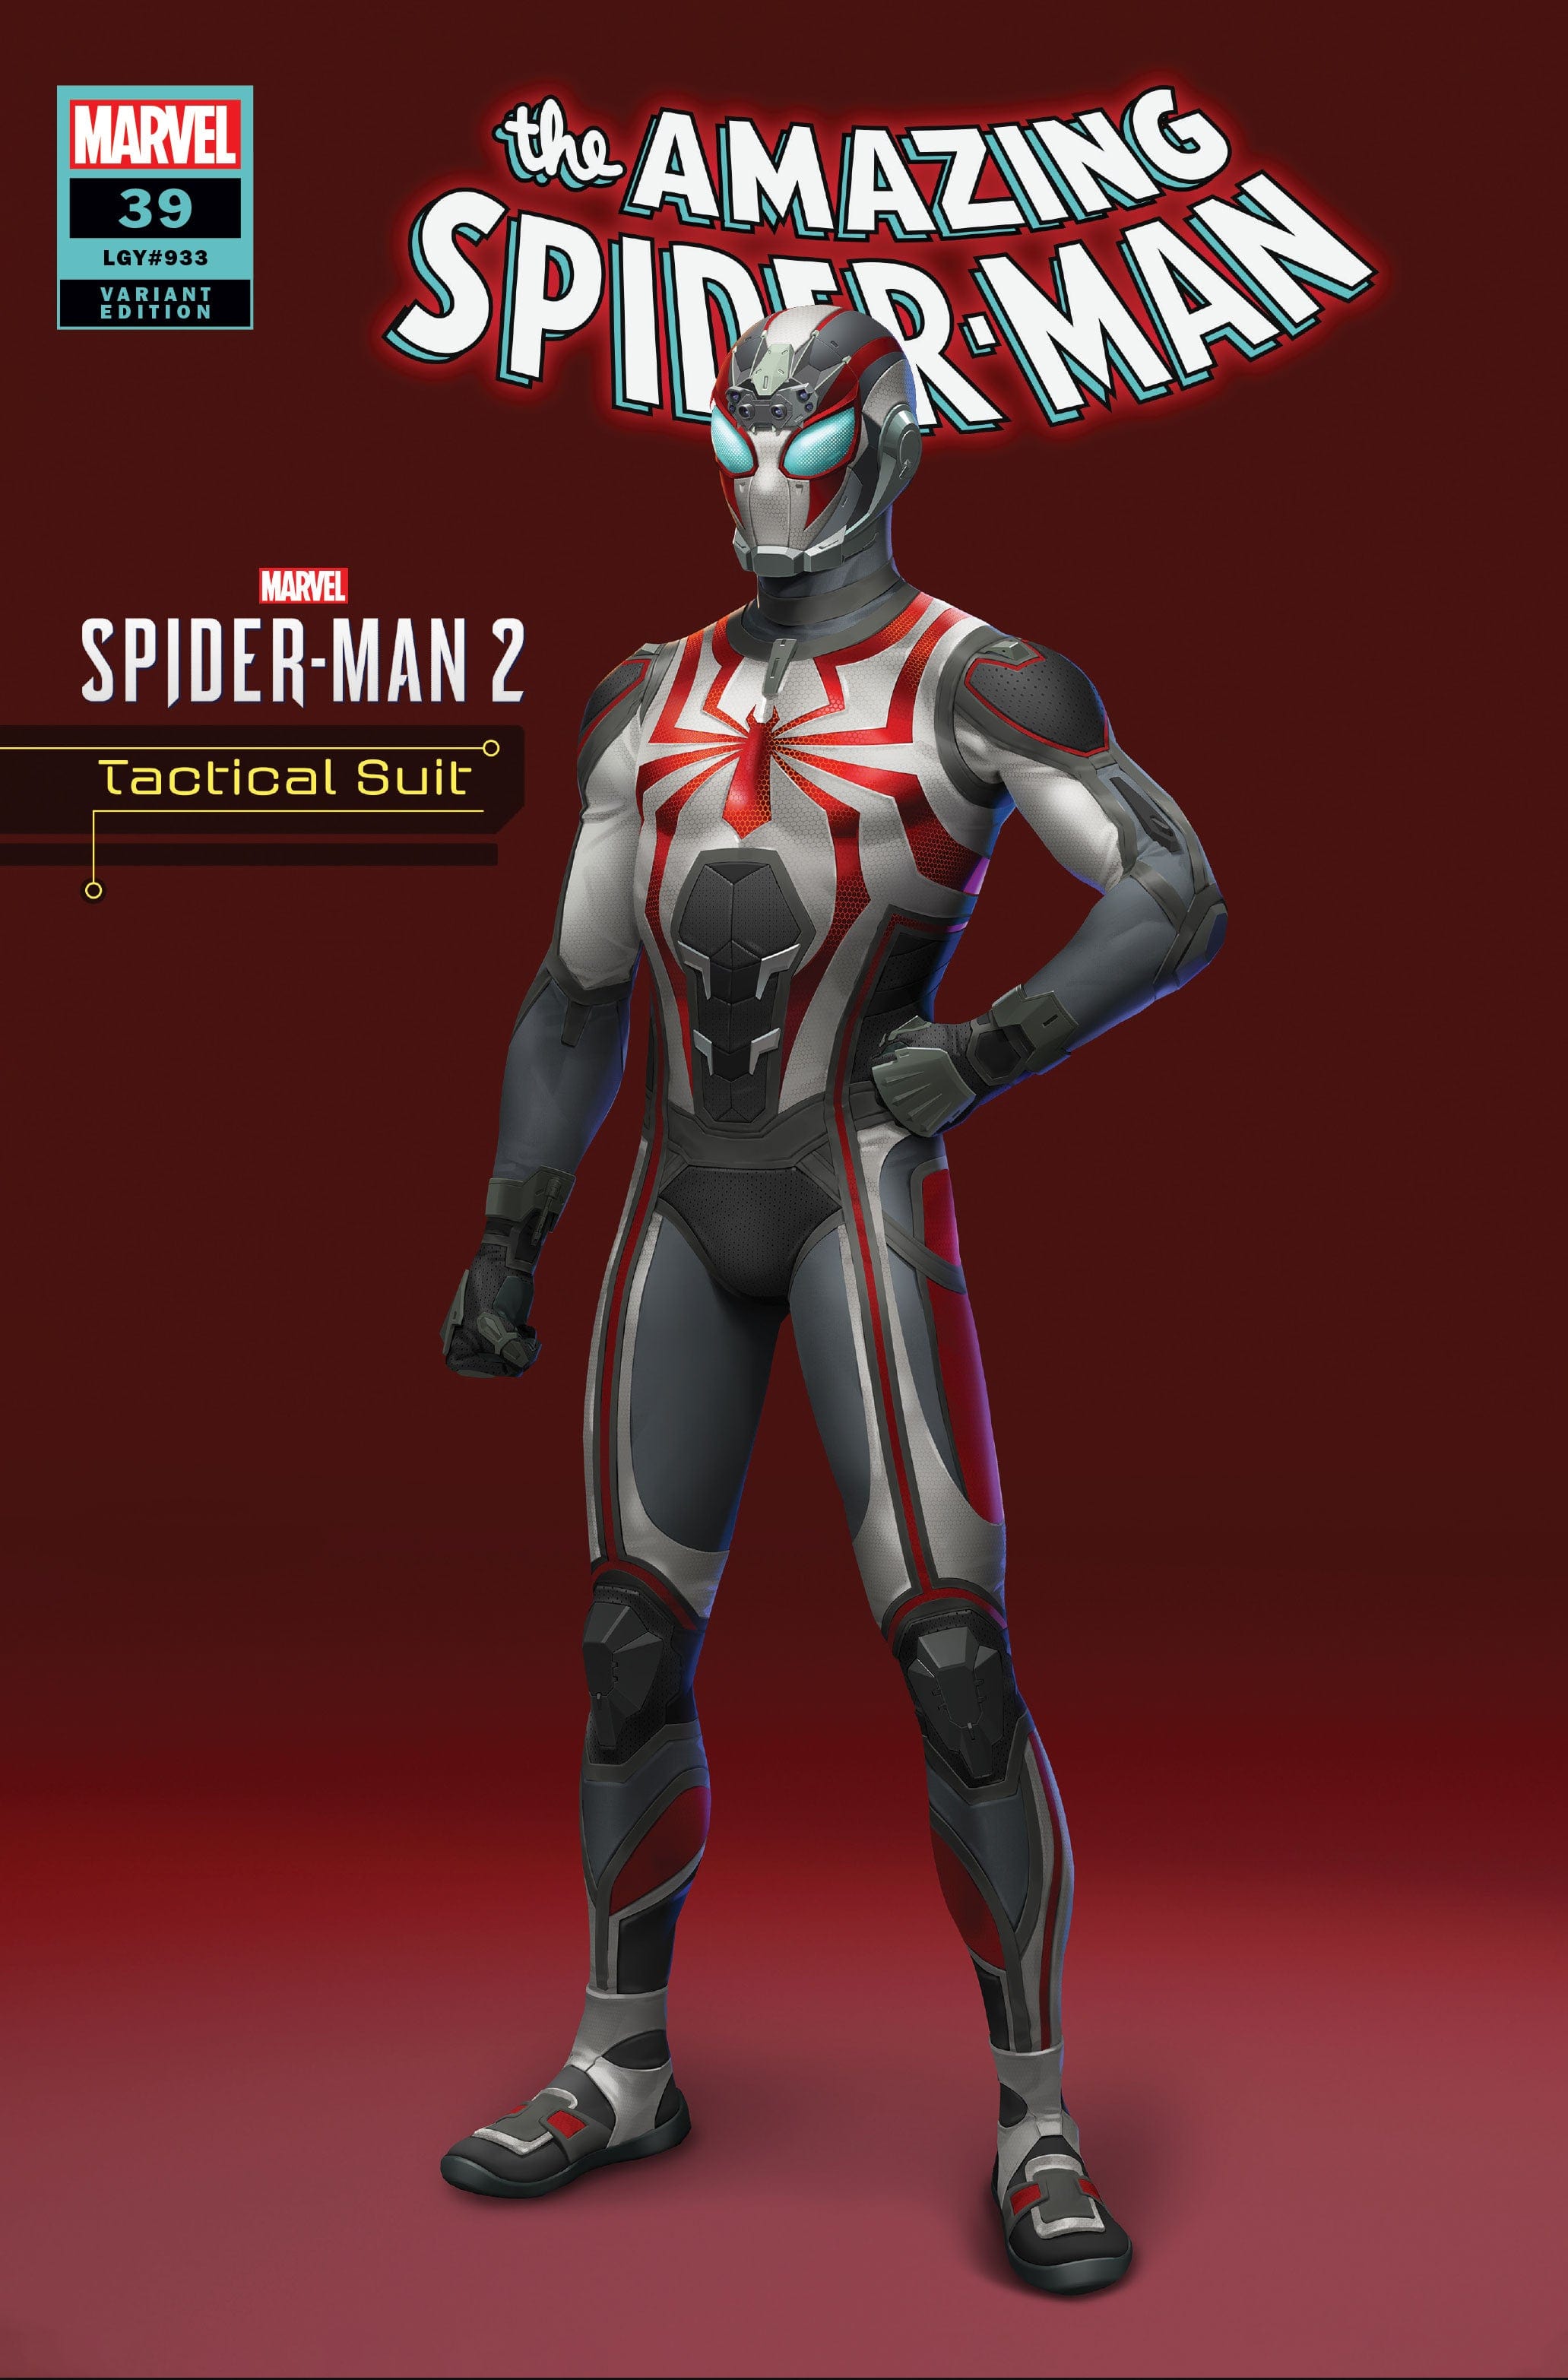 miles morales spider-man #13 agimat suit marvel's spider-man 2 var